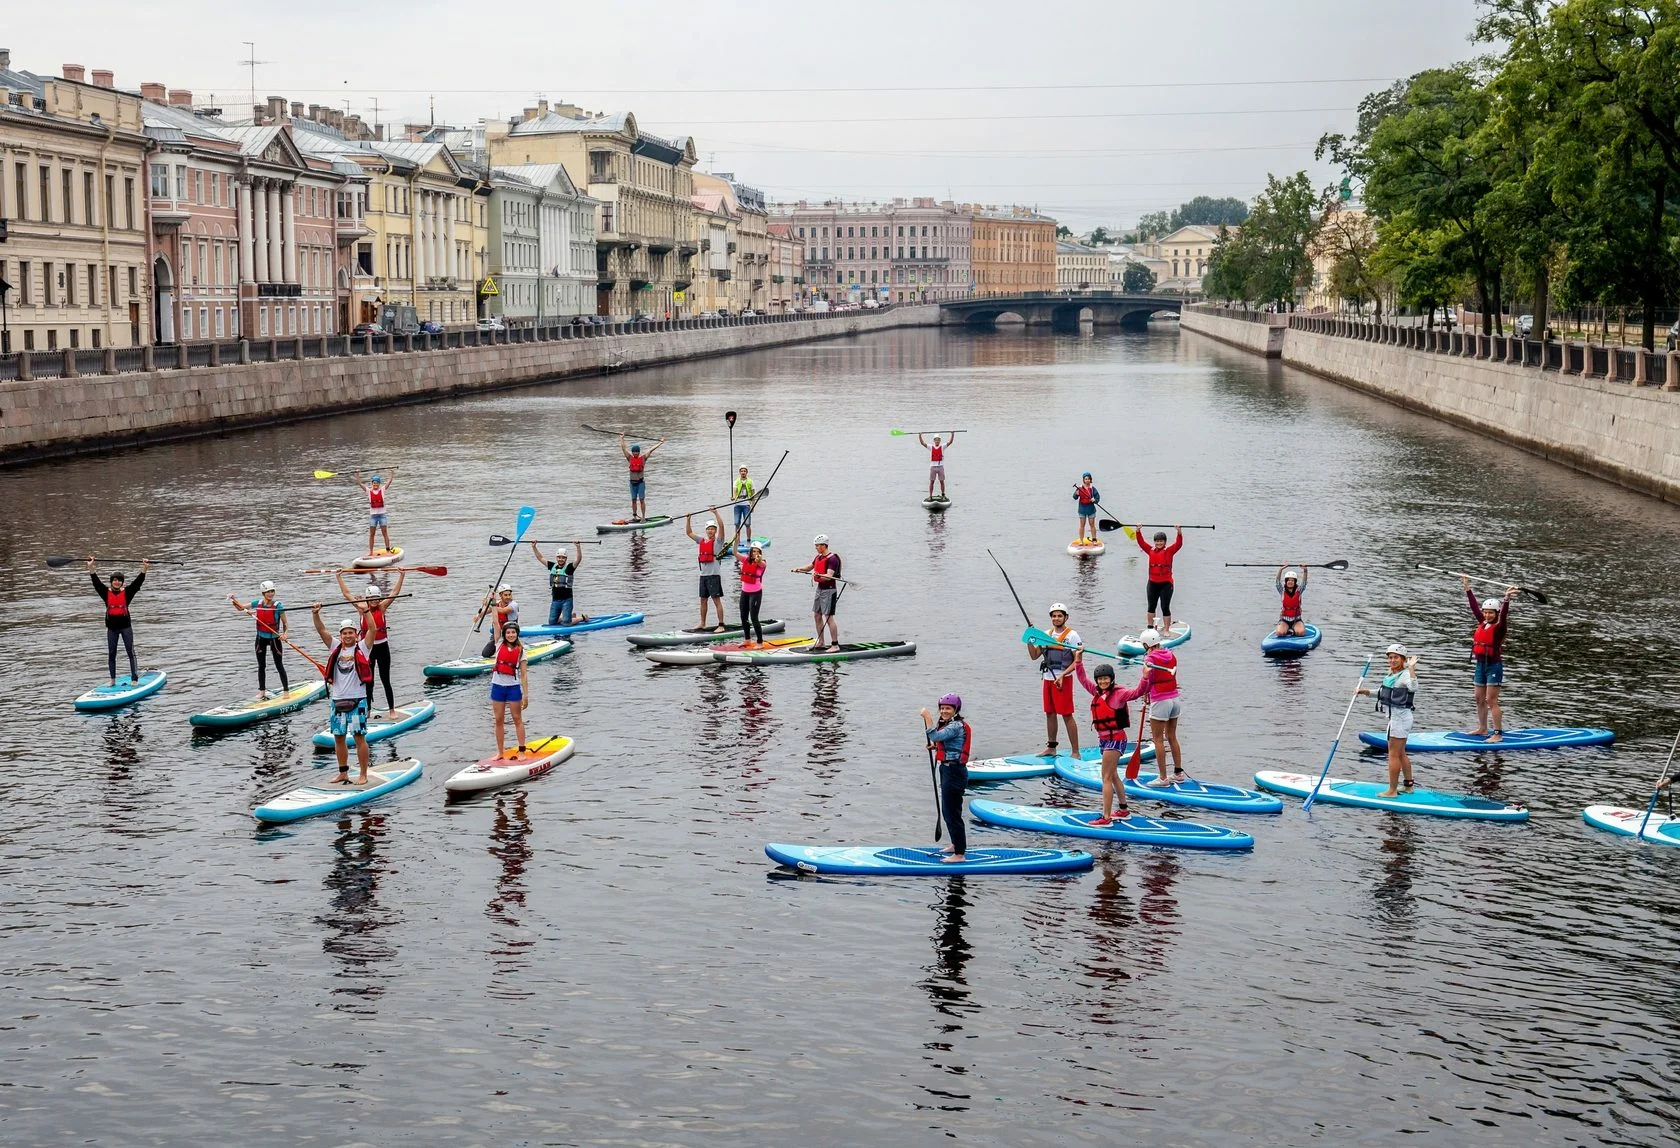 Отдых на воде в Петербурге: сочетаем активный и познавательный туризм